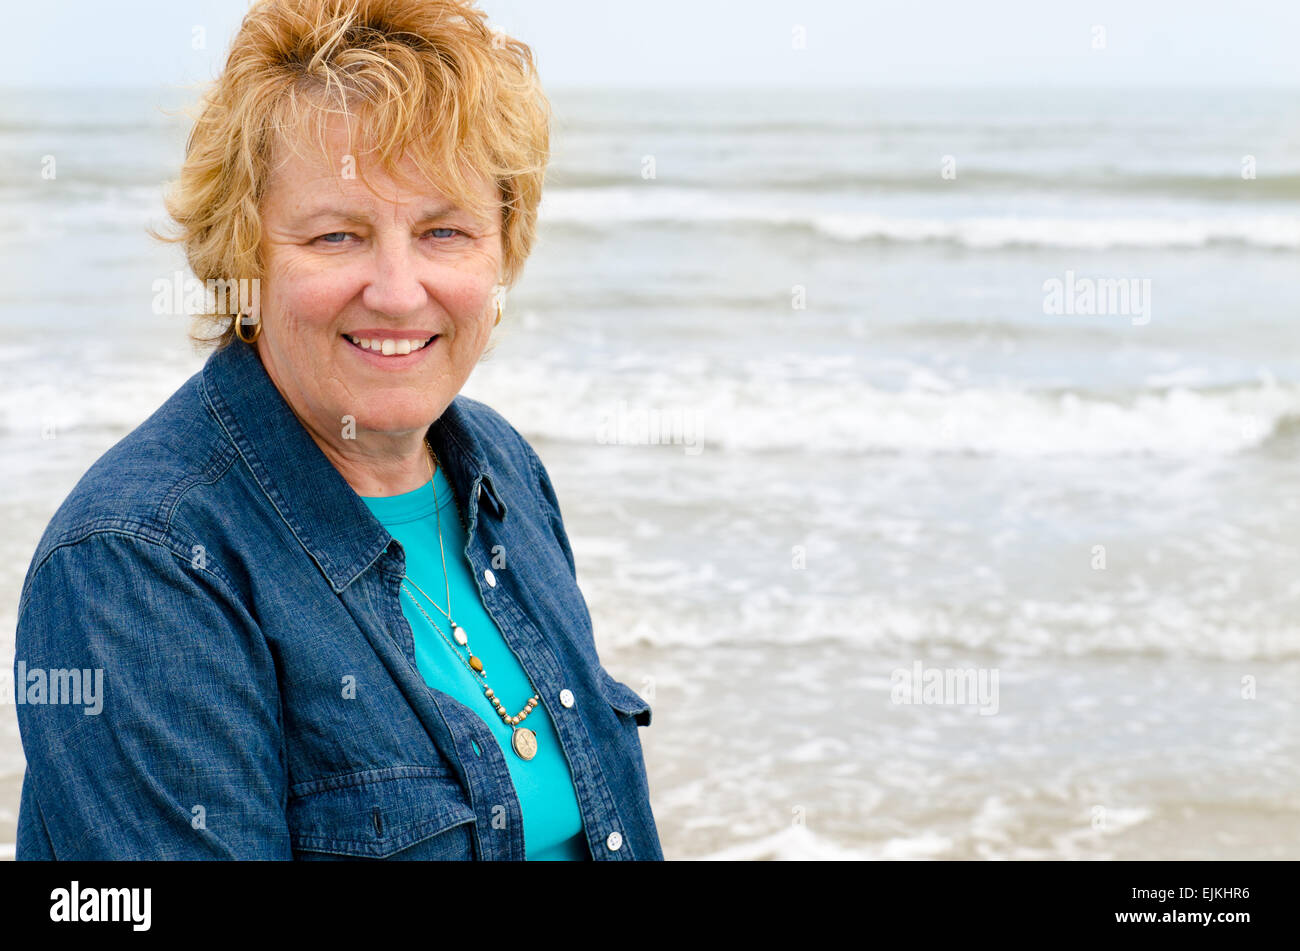 Senior woman on the beach smiling Stock Photo